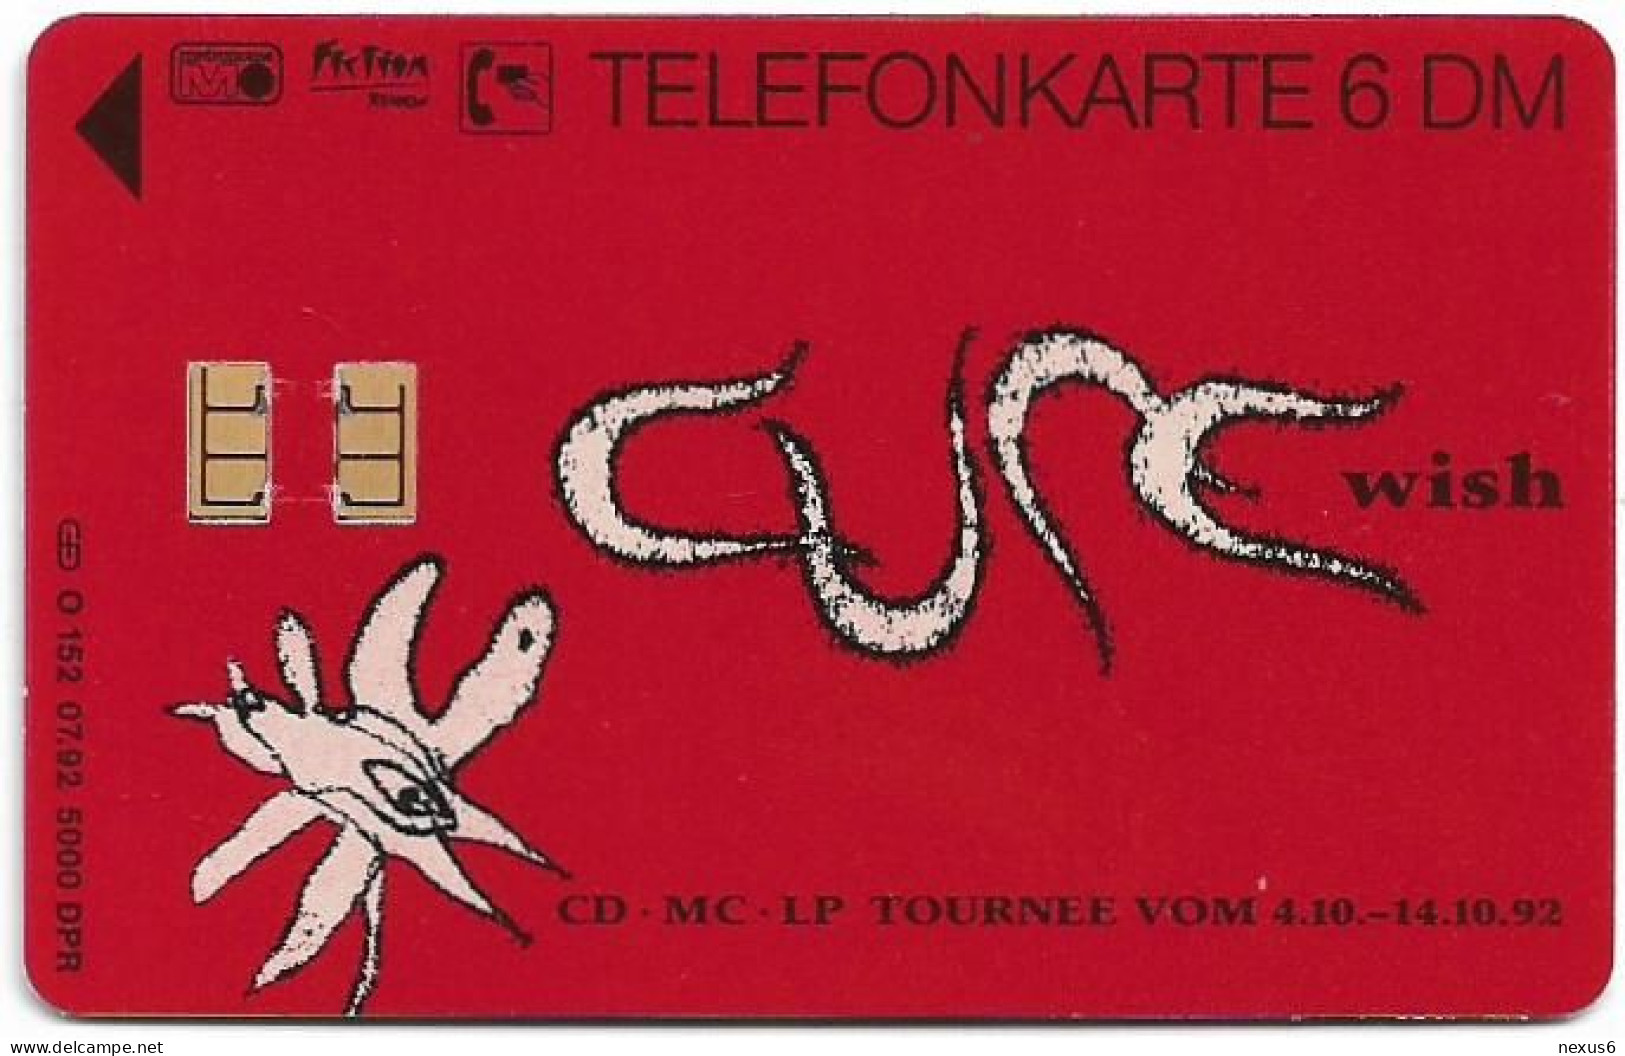 Germany - The Cure - Wish - O 0152 - 07.1992, 6DM, 5.000ex, Mint - O-Serie : Serie Clienti Esclusi Dal Servizio Delle Collezioni